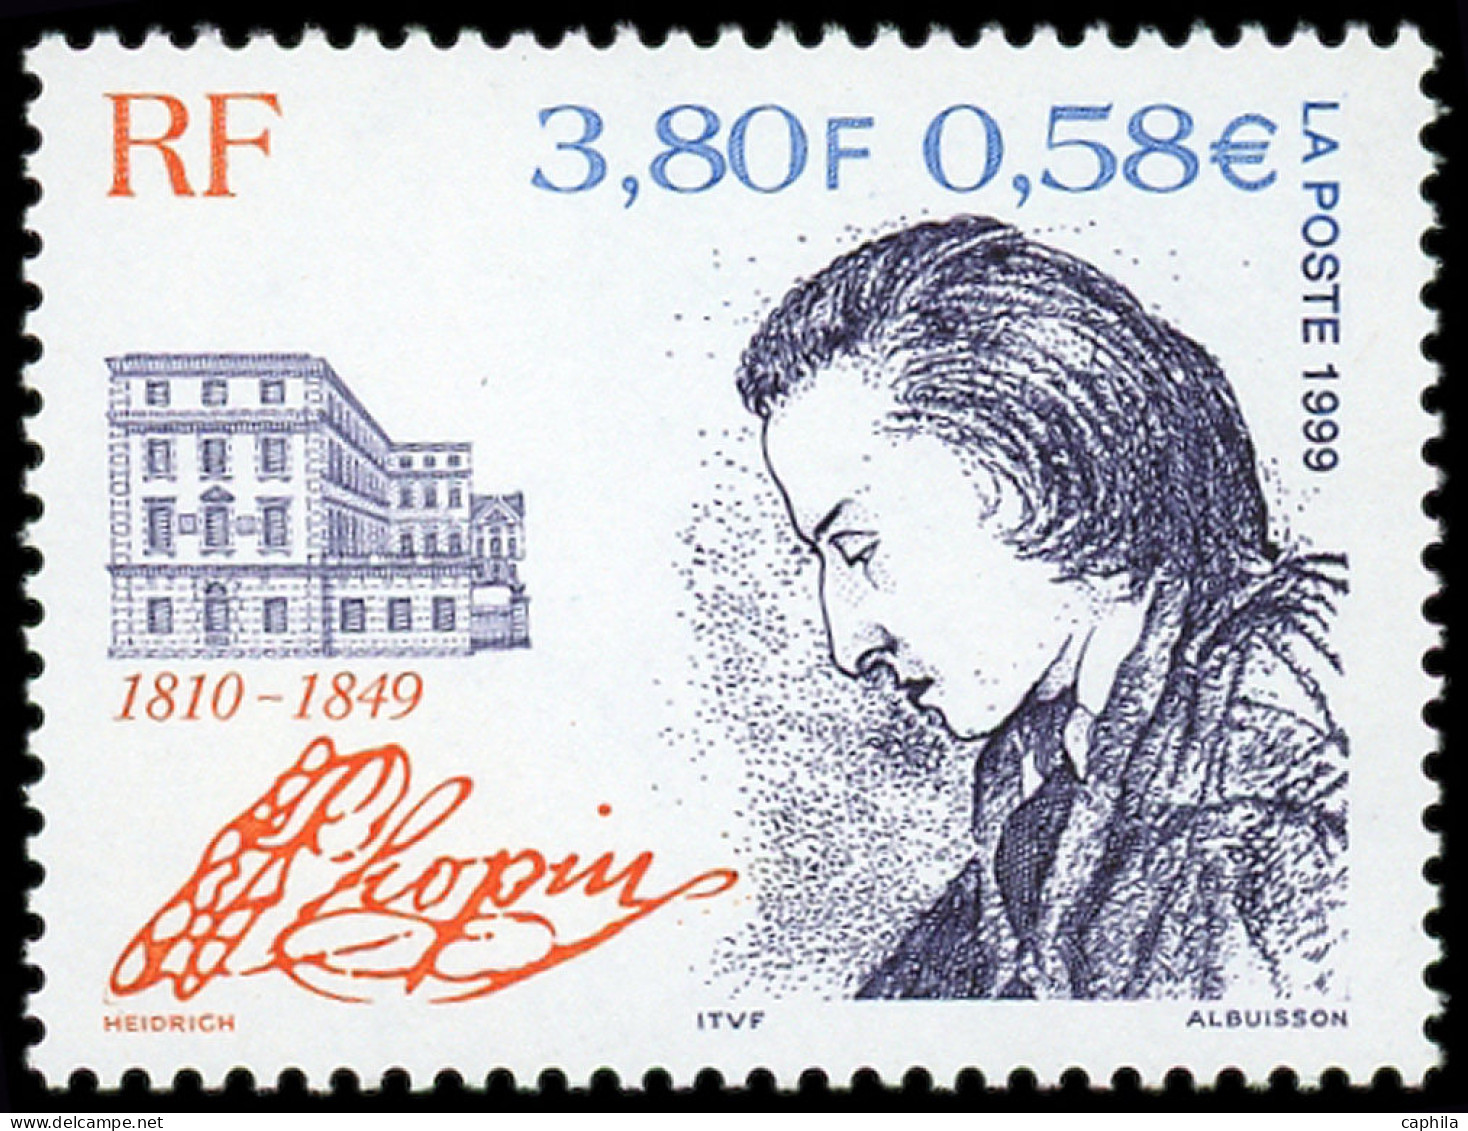 ** FRANCE - Poste - 3287a, Sans Fond Bleu, Certificat Cérès: Chopin - Neufs